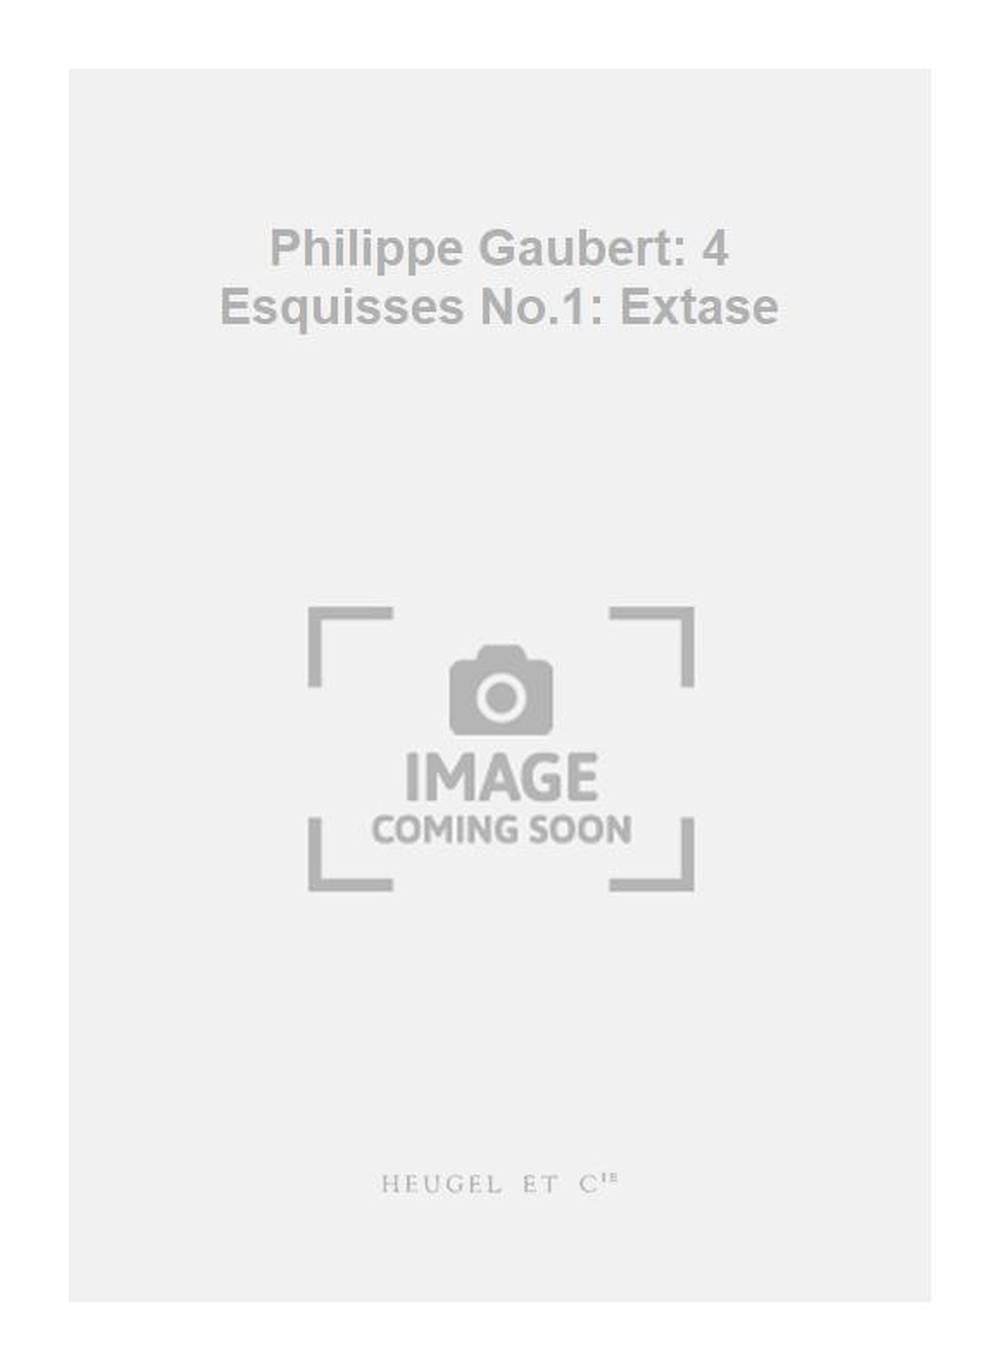 Philippe Gaubert: Philippe Gaubert: 4 Esquisses No.1: Extase